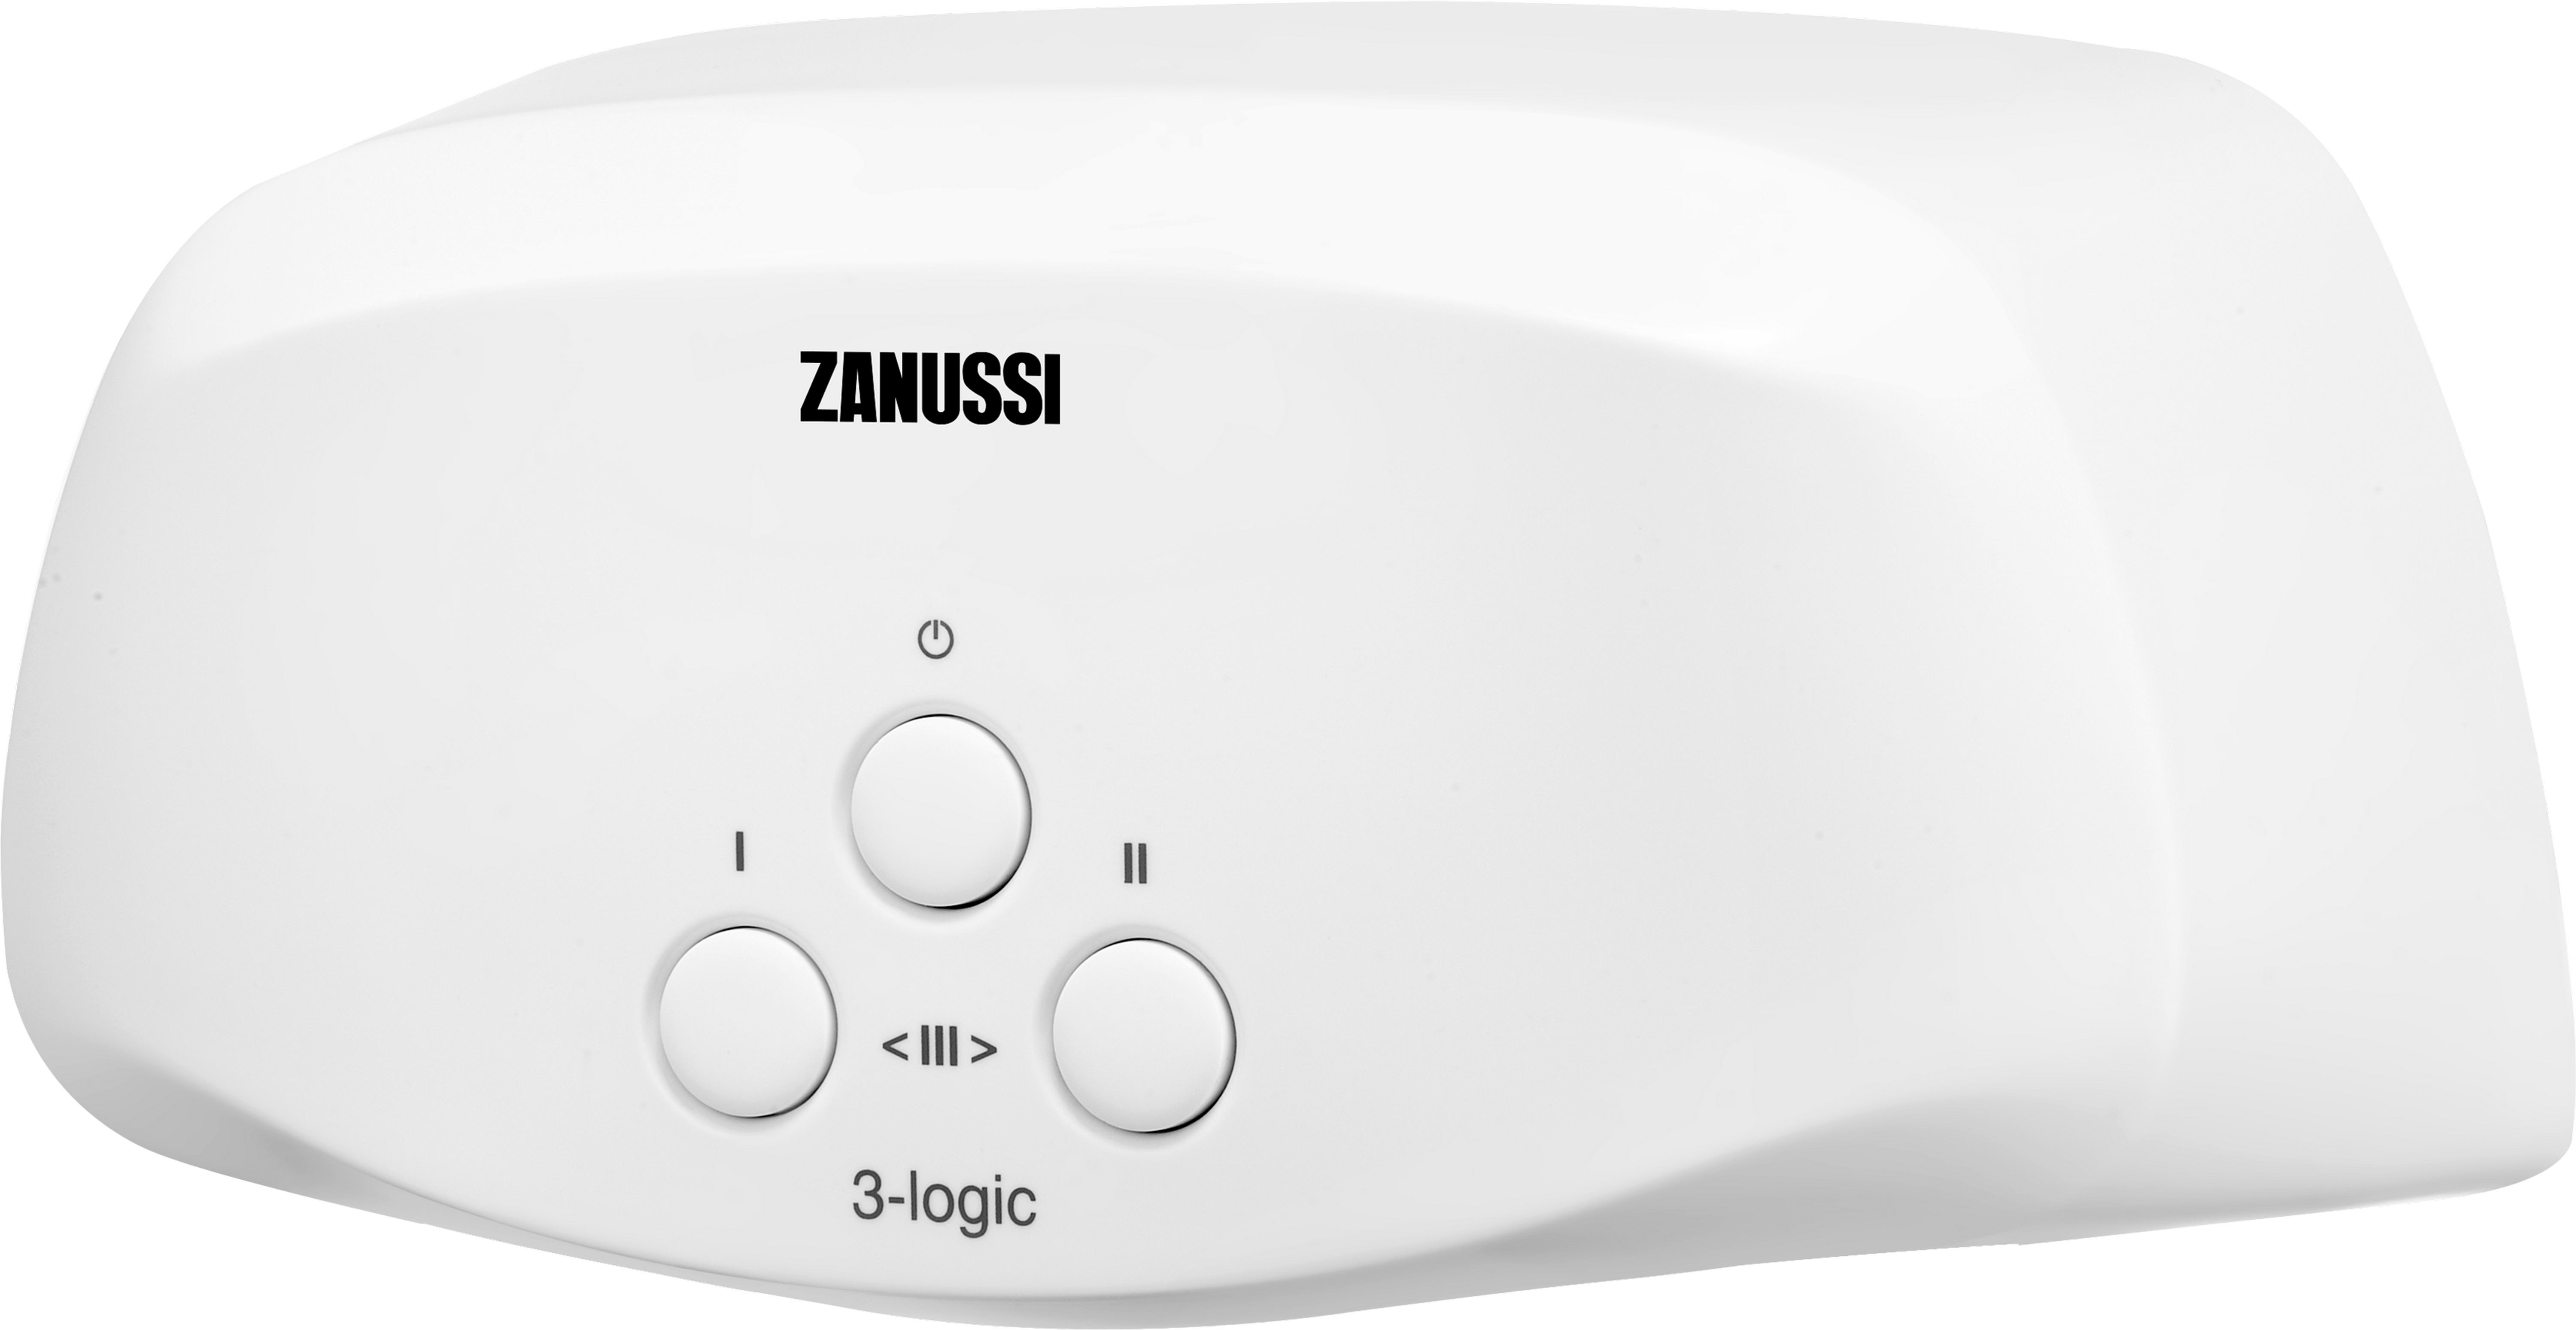 Проточный водонагреватель Zanussi 3-logic T (5,5 кВт) цена 0.00 грн - фотография 2